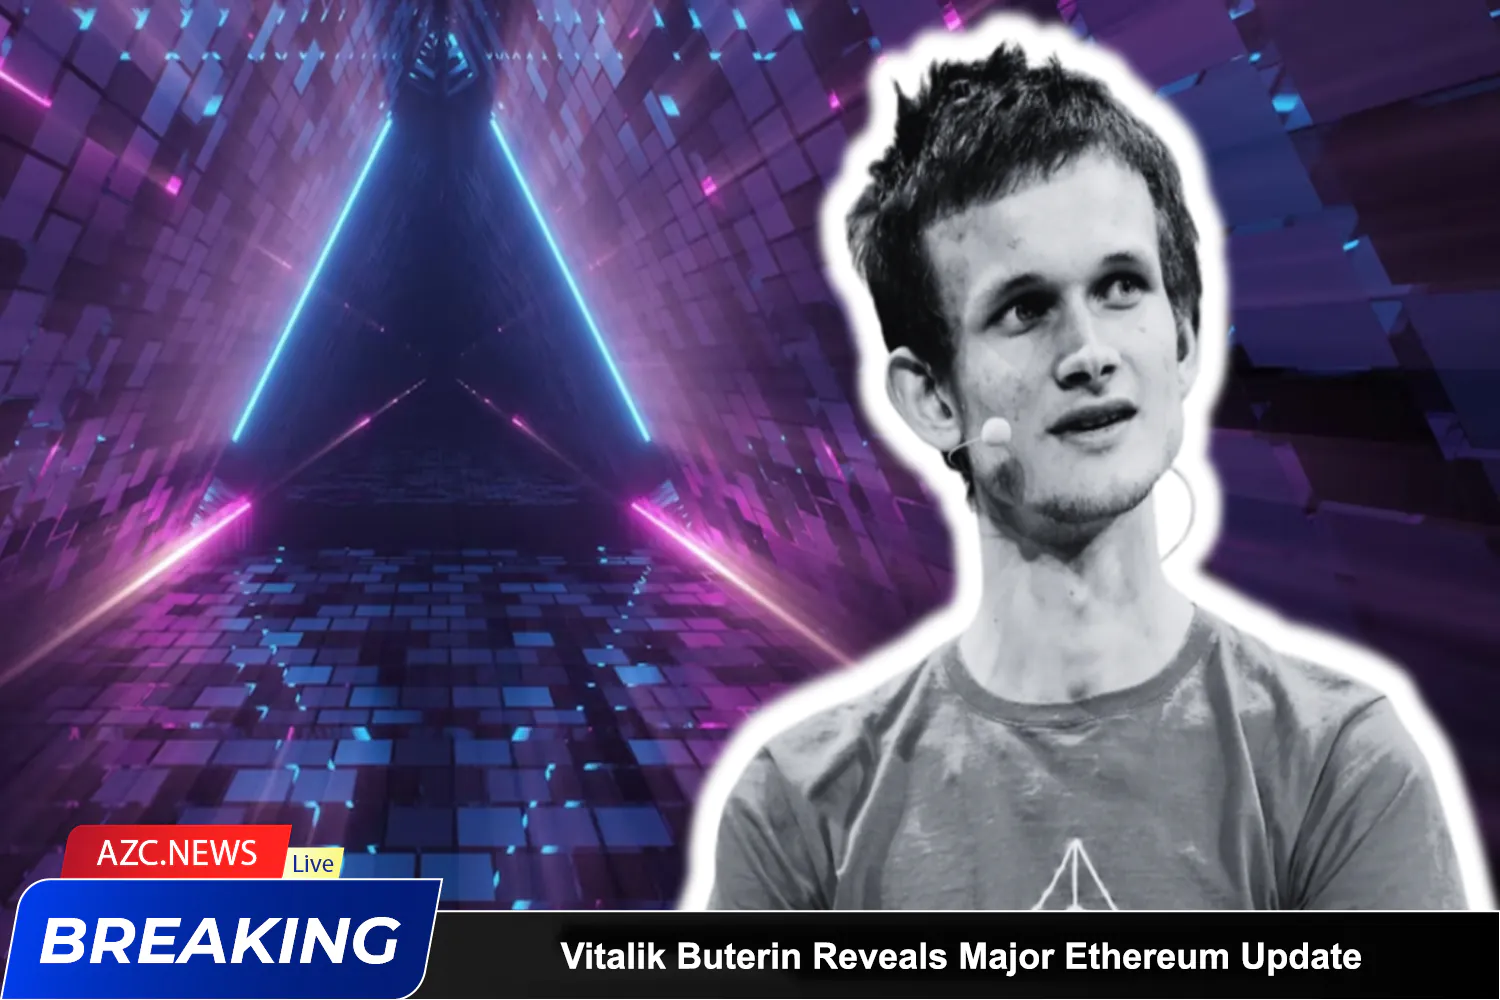 Azcnews Vitalik Buterin Reveals Major Ethereum Update